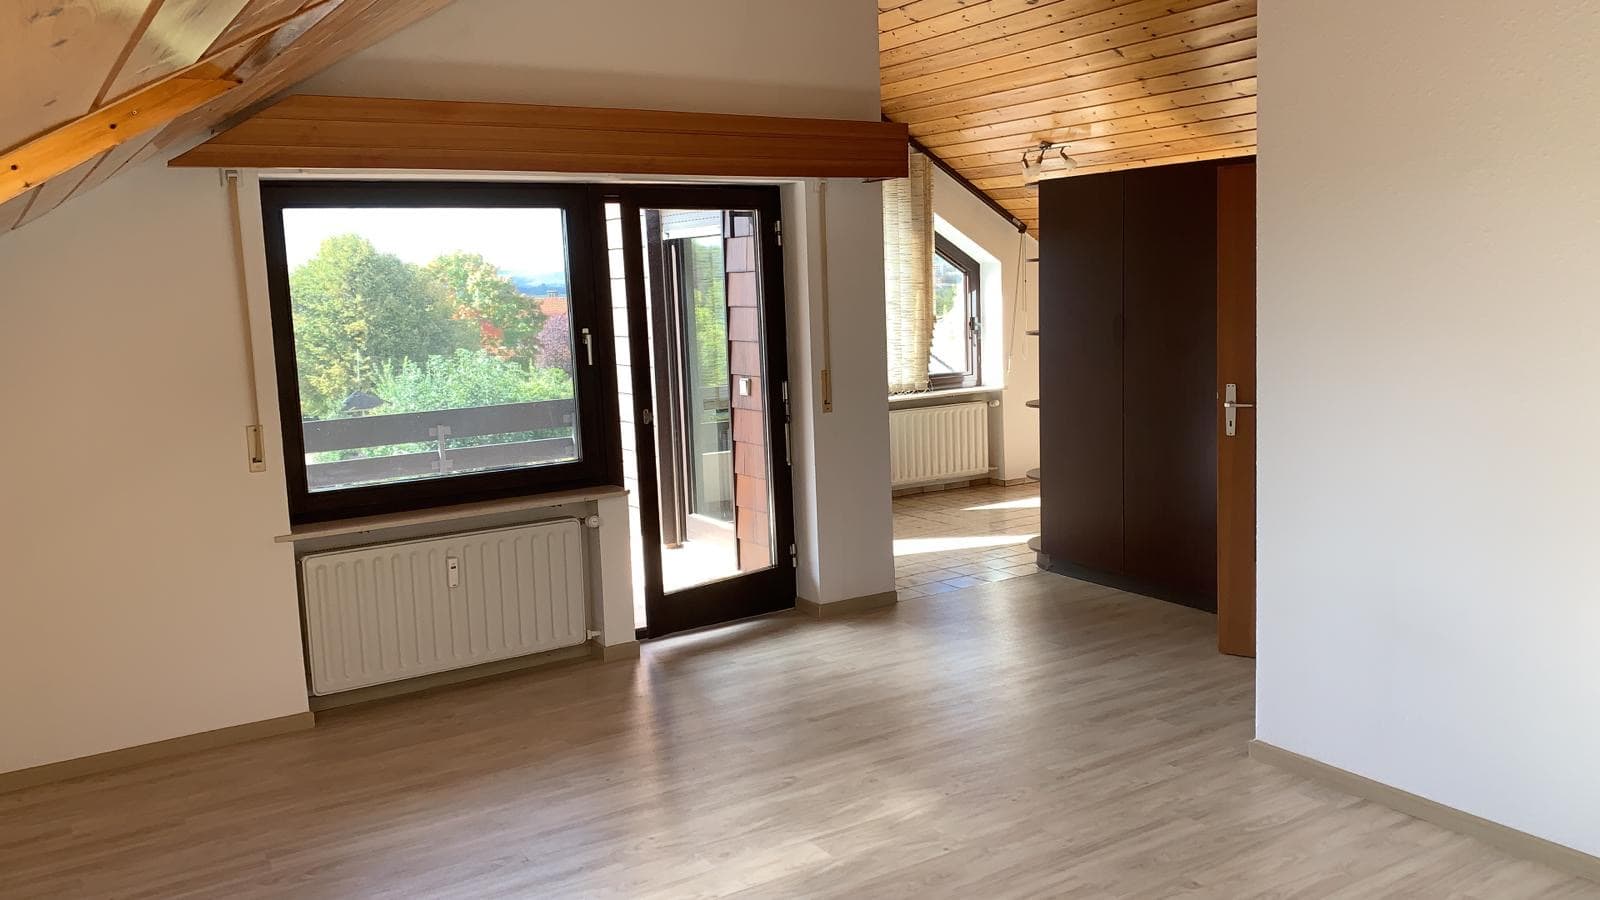 Vermietet: Gemütlichkeit und Moderne vereint: 3-Zimmer-DG-Wohnung mit Einbauküche und 2 Balkonen in beliebtem Ortsteil von Michelbach/Bilz